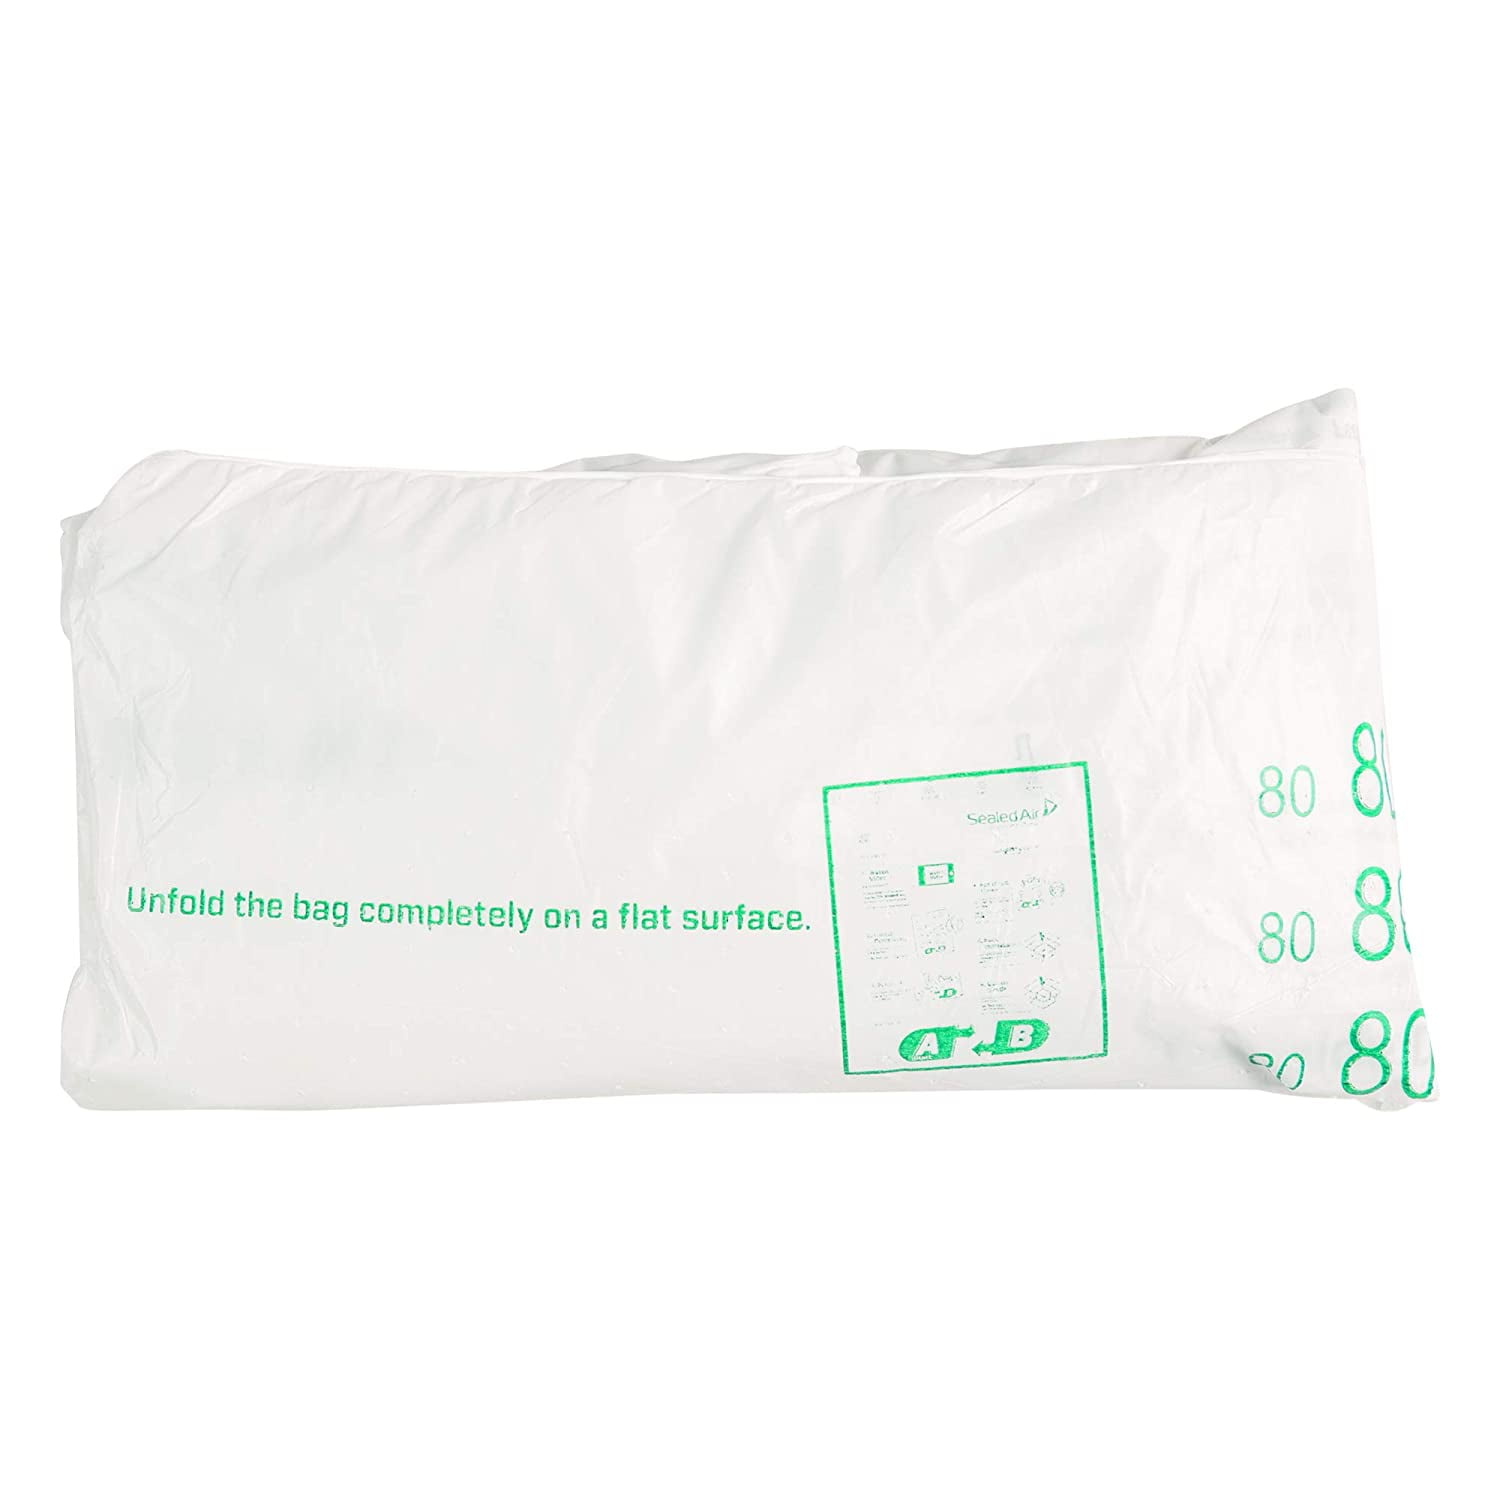 Foam in Bag & Sealed Air Packaging